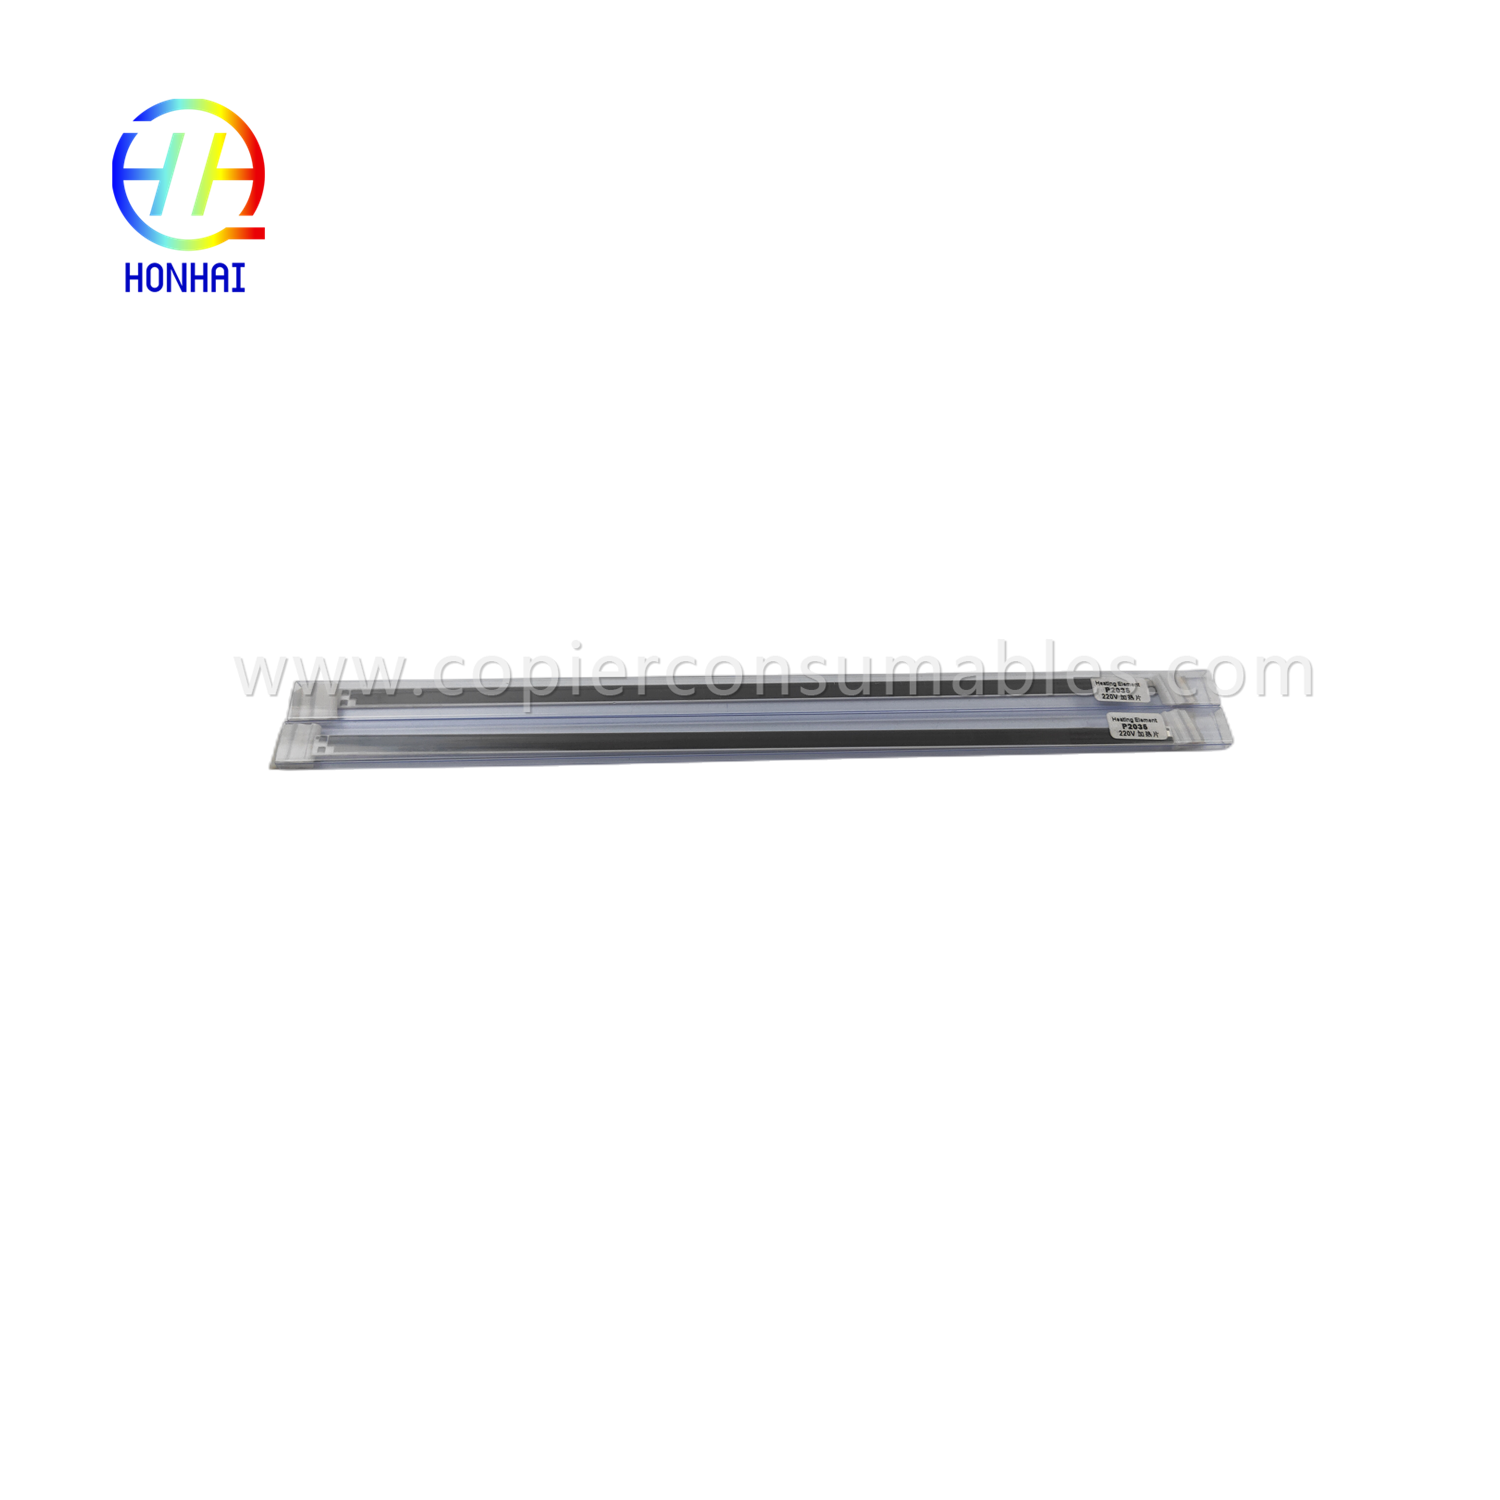 https://c585.goodao.net/elemento-de-calefacción-220v-oem-for-hp-laserjet-p2035-p2055-rm1-6406-heat-product/